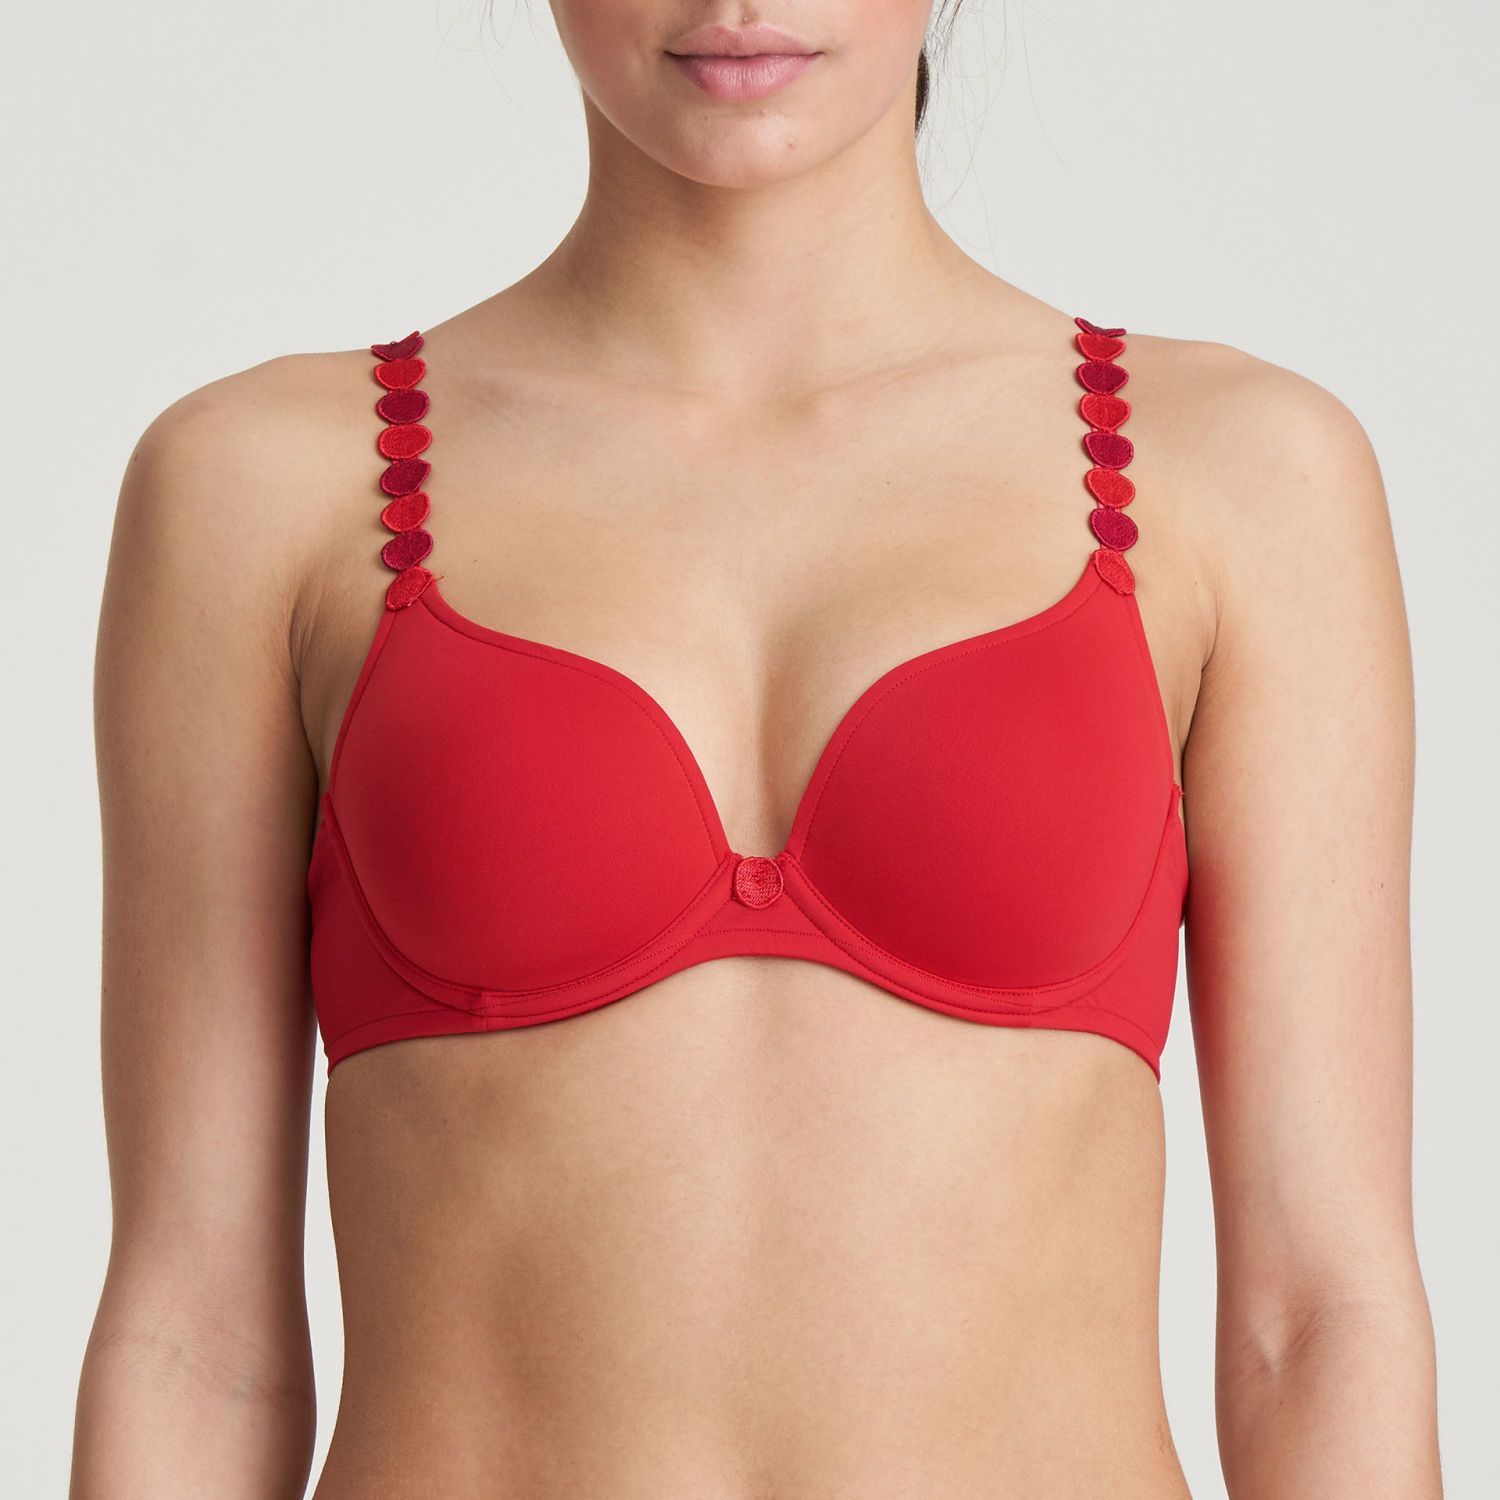 https://www.silksboutique.com/img/product/marie-jo-tom-heart-shape-bra-scarlet-32a-9003271-1600.jpg